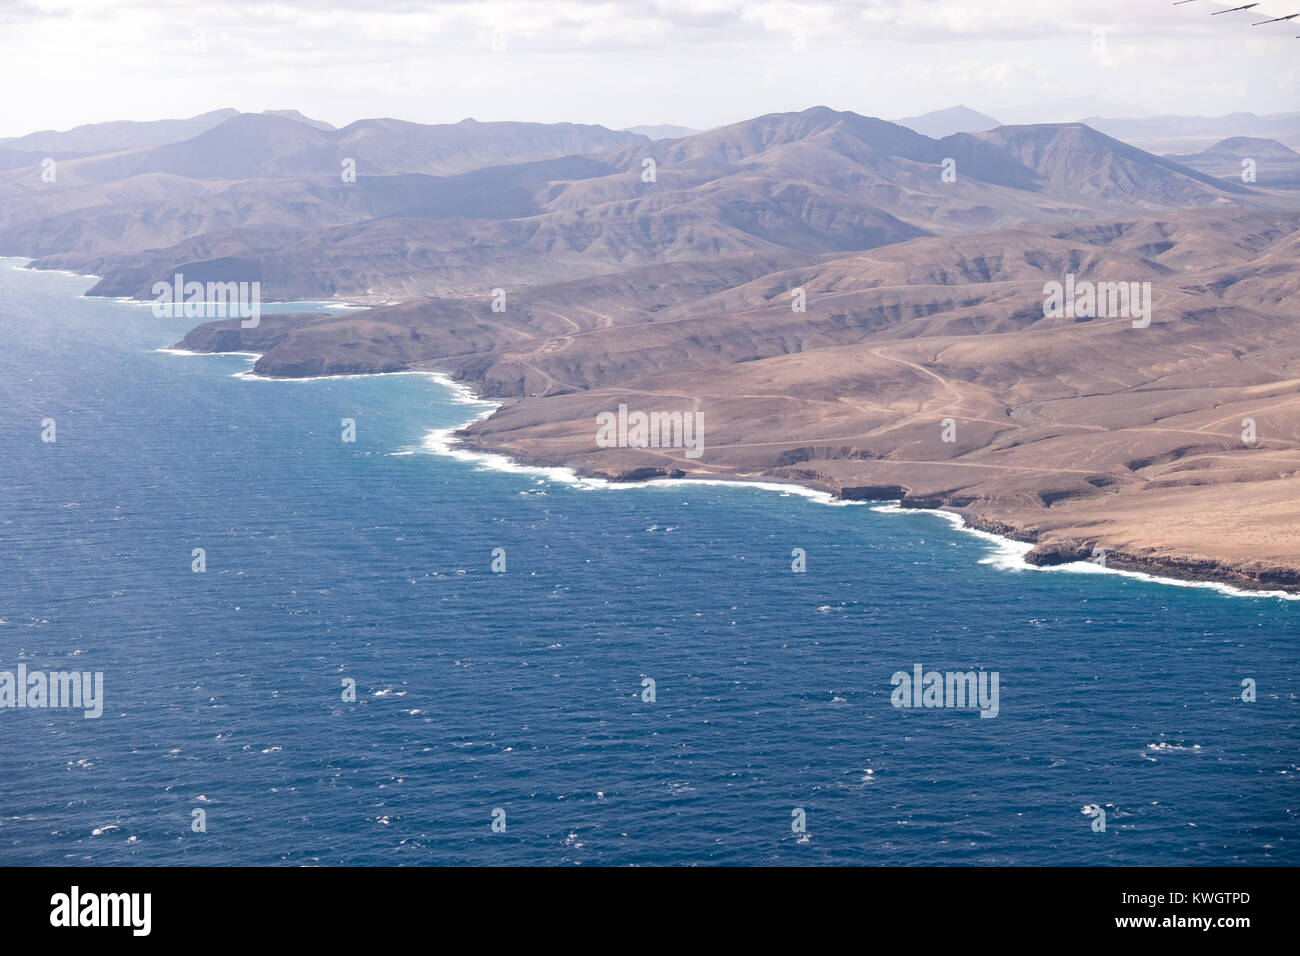 Photographie aérienne de l'archipel des Canaries Banque D'Images